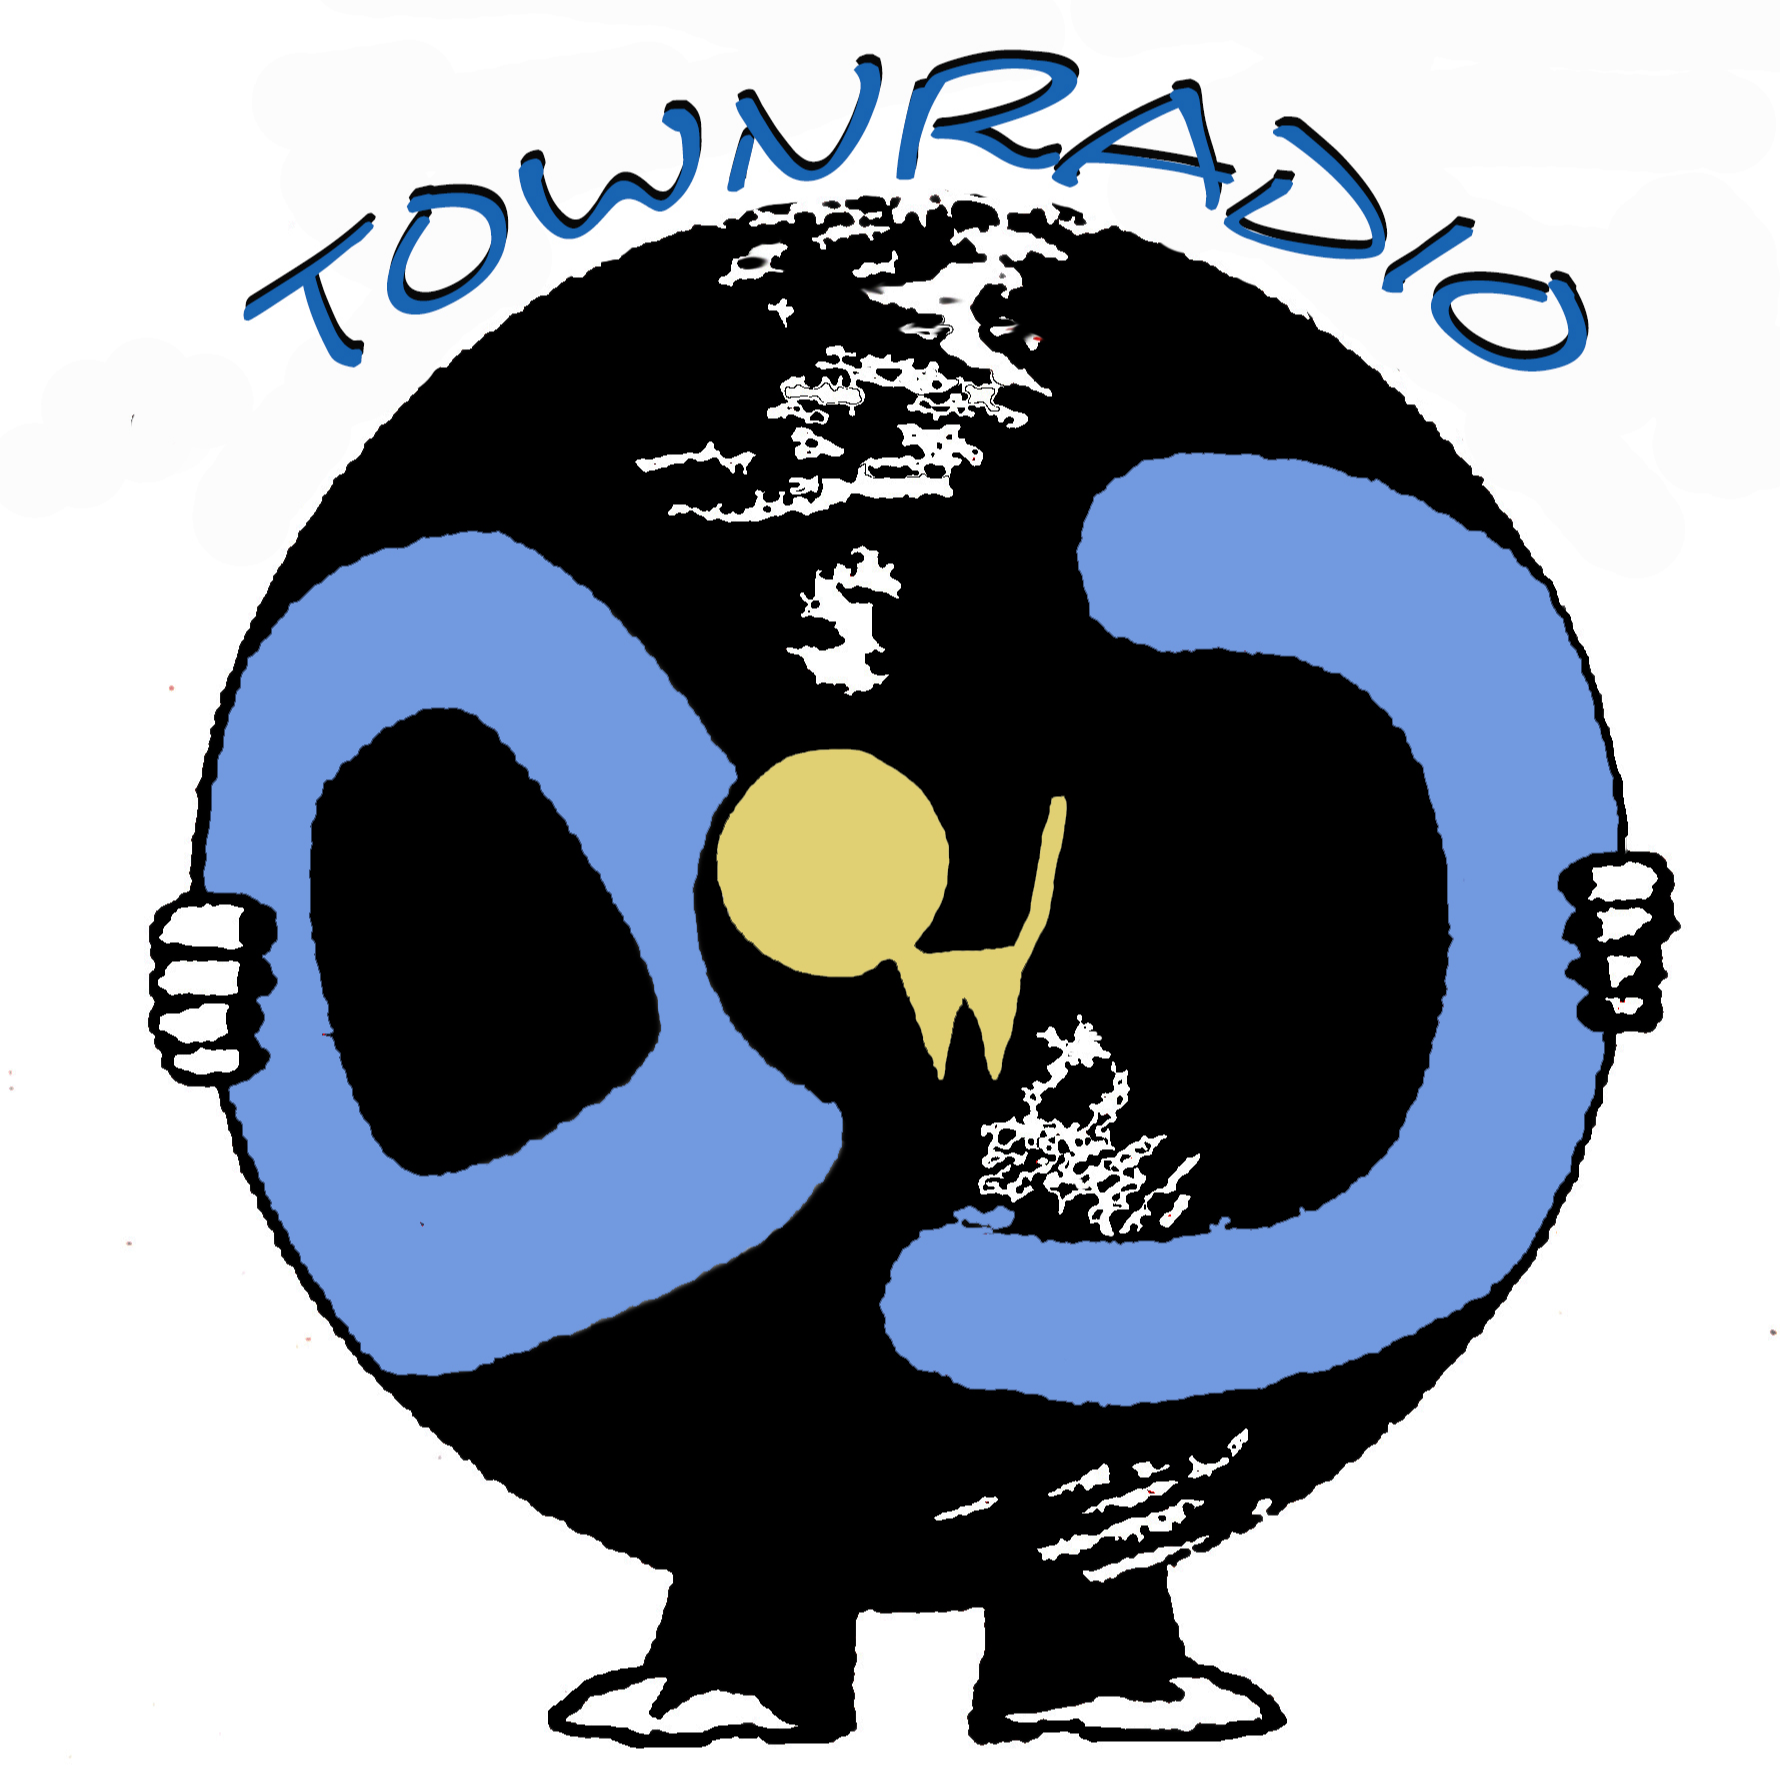 Townradio247